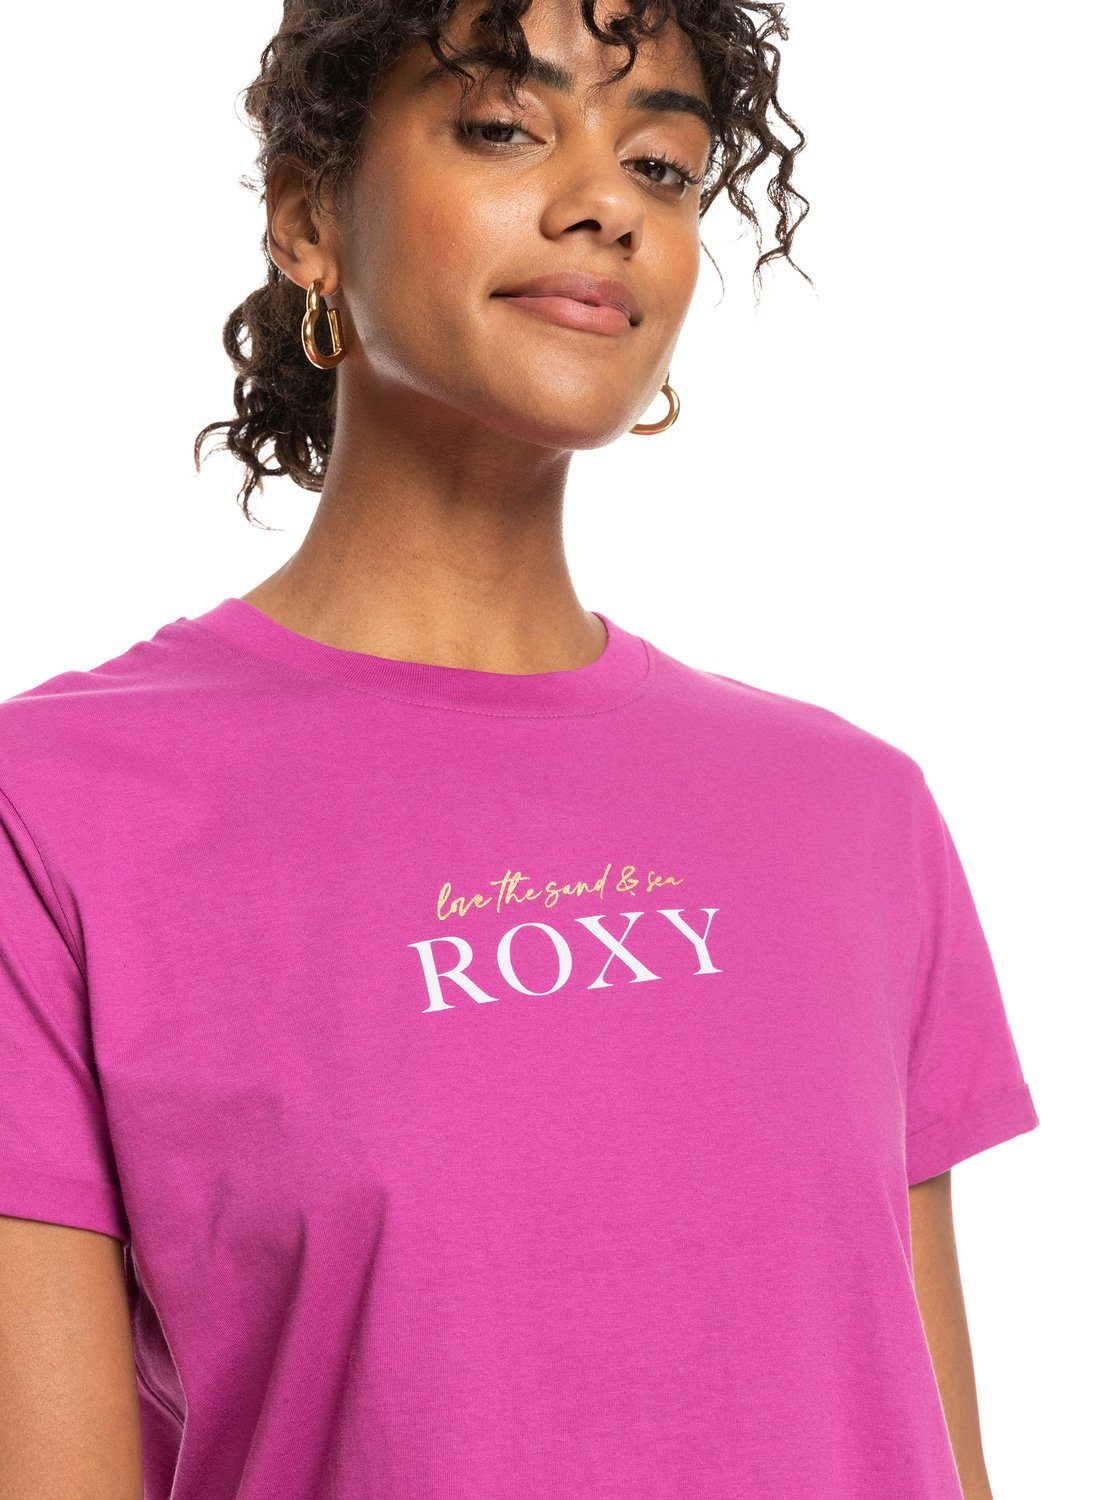 Roxy T-shirt Noon ocean